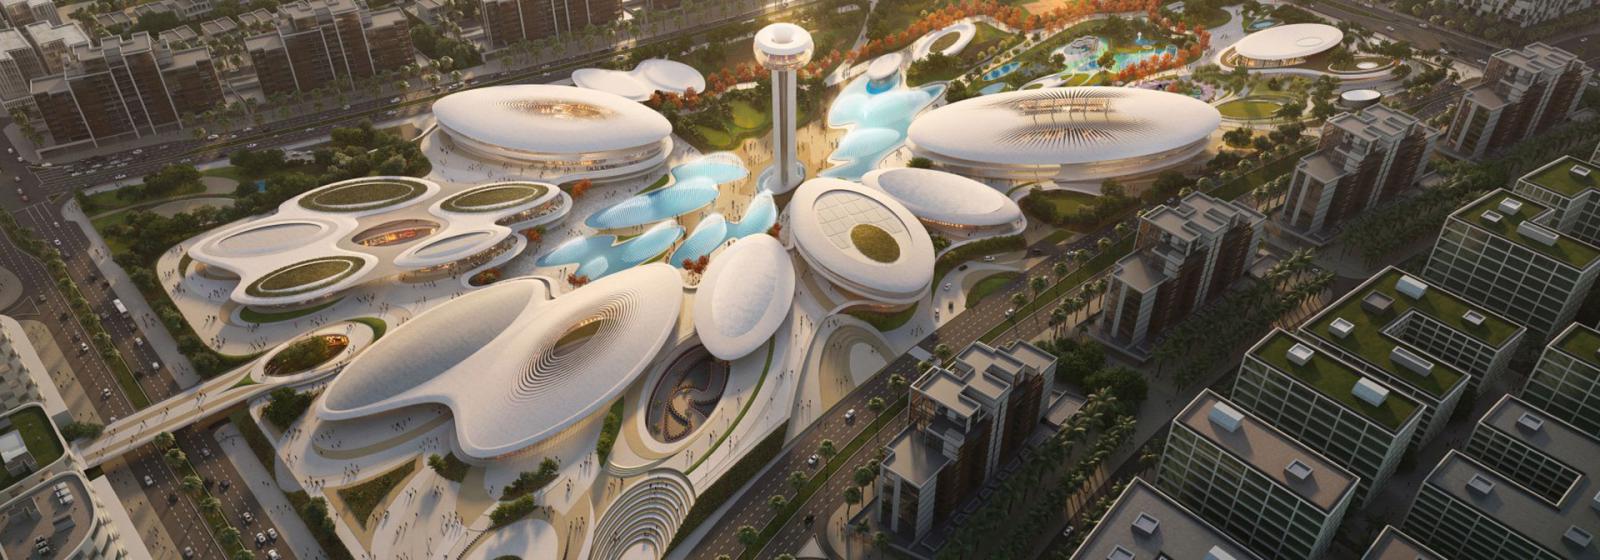 Zaha Hadid Architects: развлекательный комплекс в ОАЭ